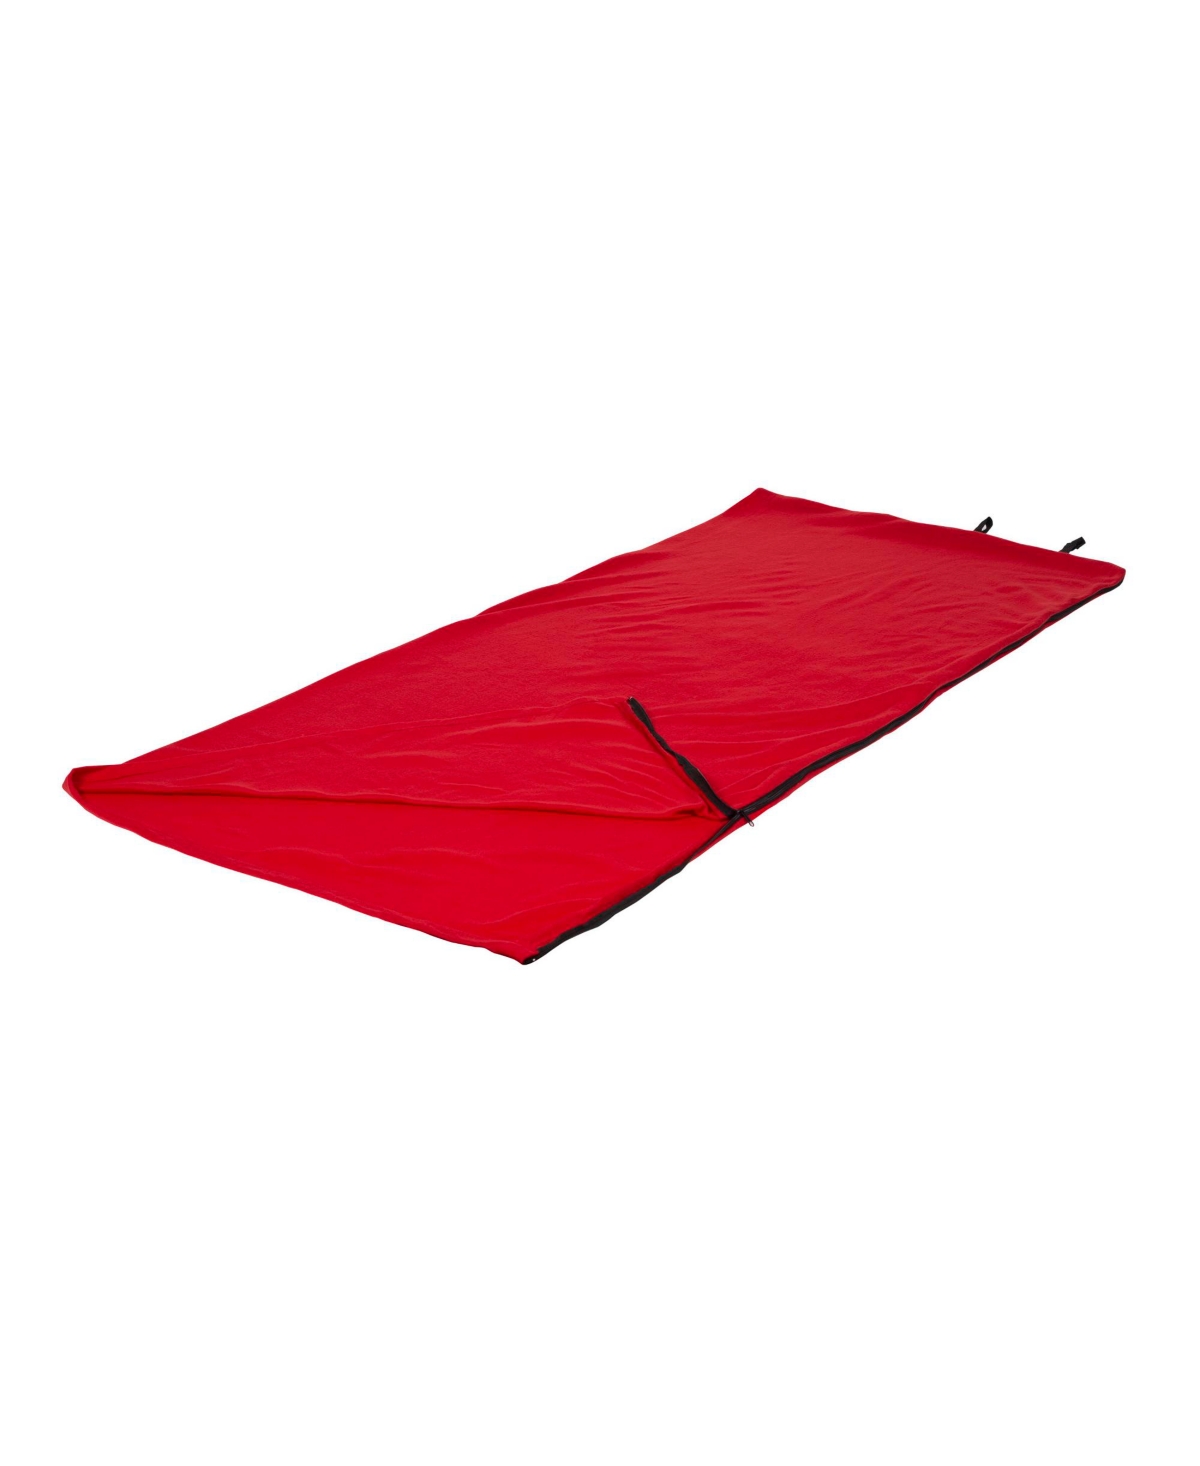 Stan sport Fleece Sleeping Bag - Red - Red